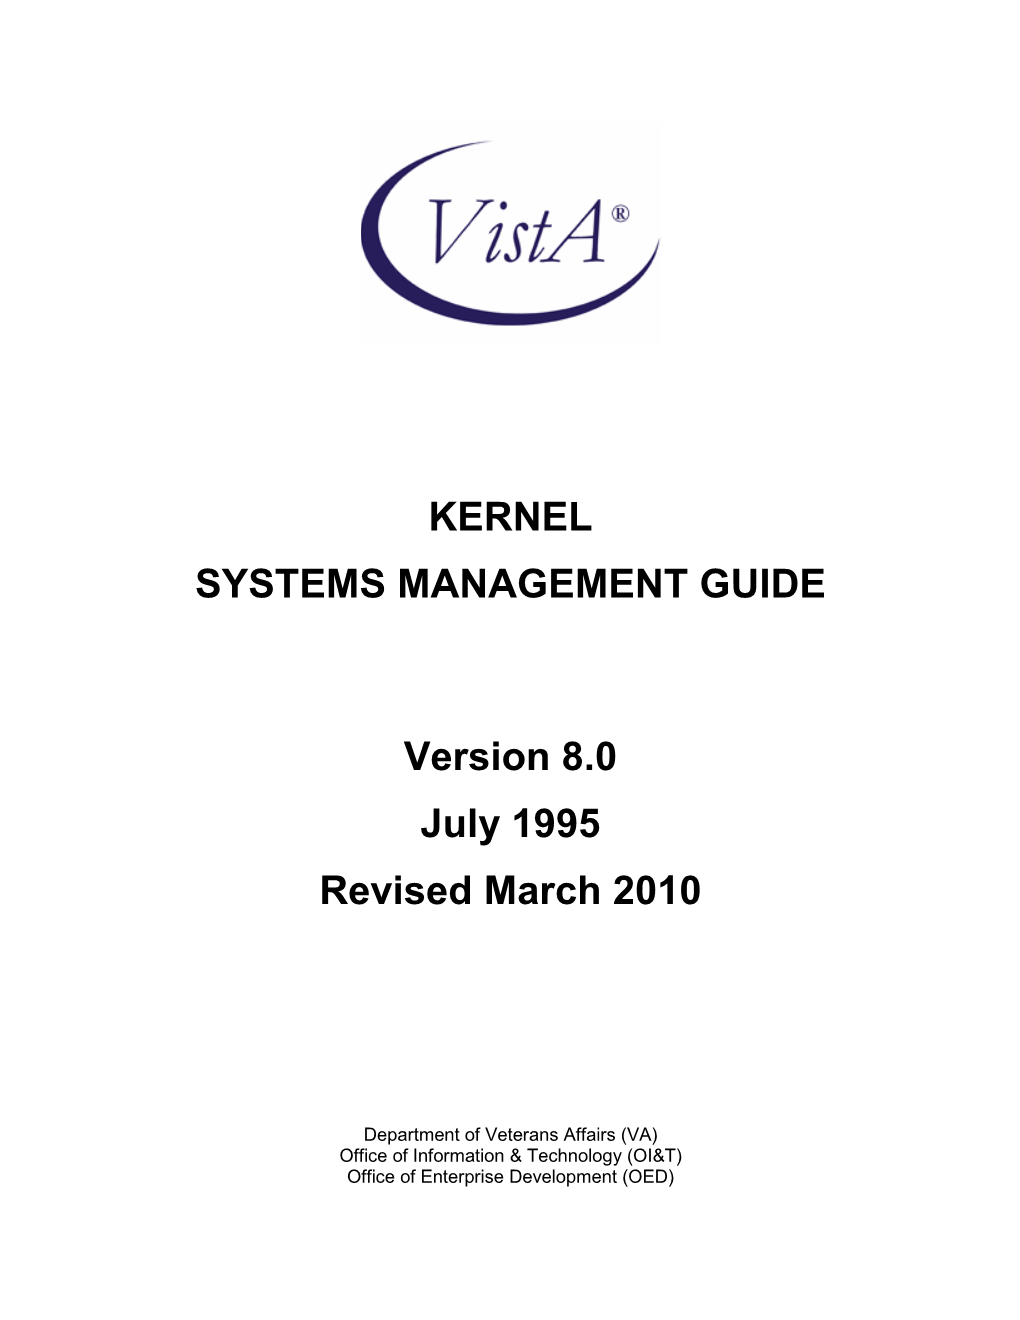 Vista Kernel Systems Management Guide